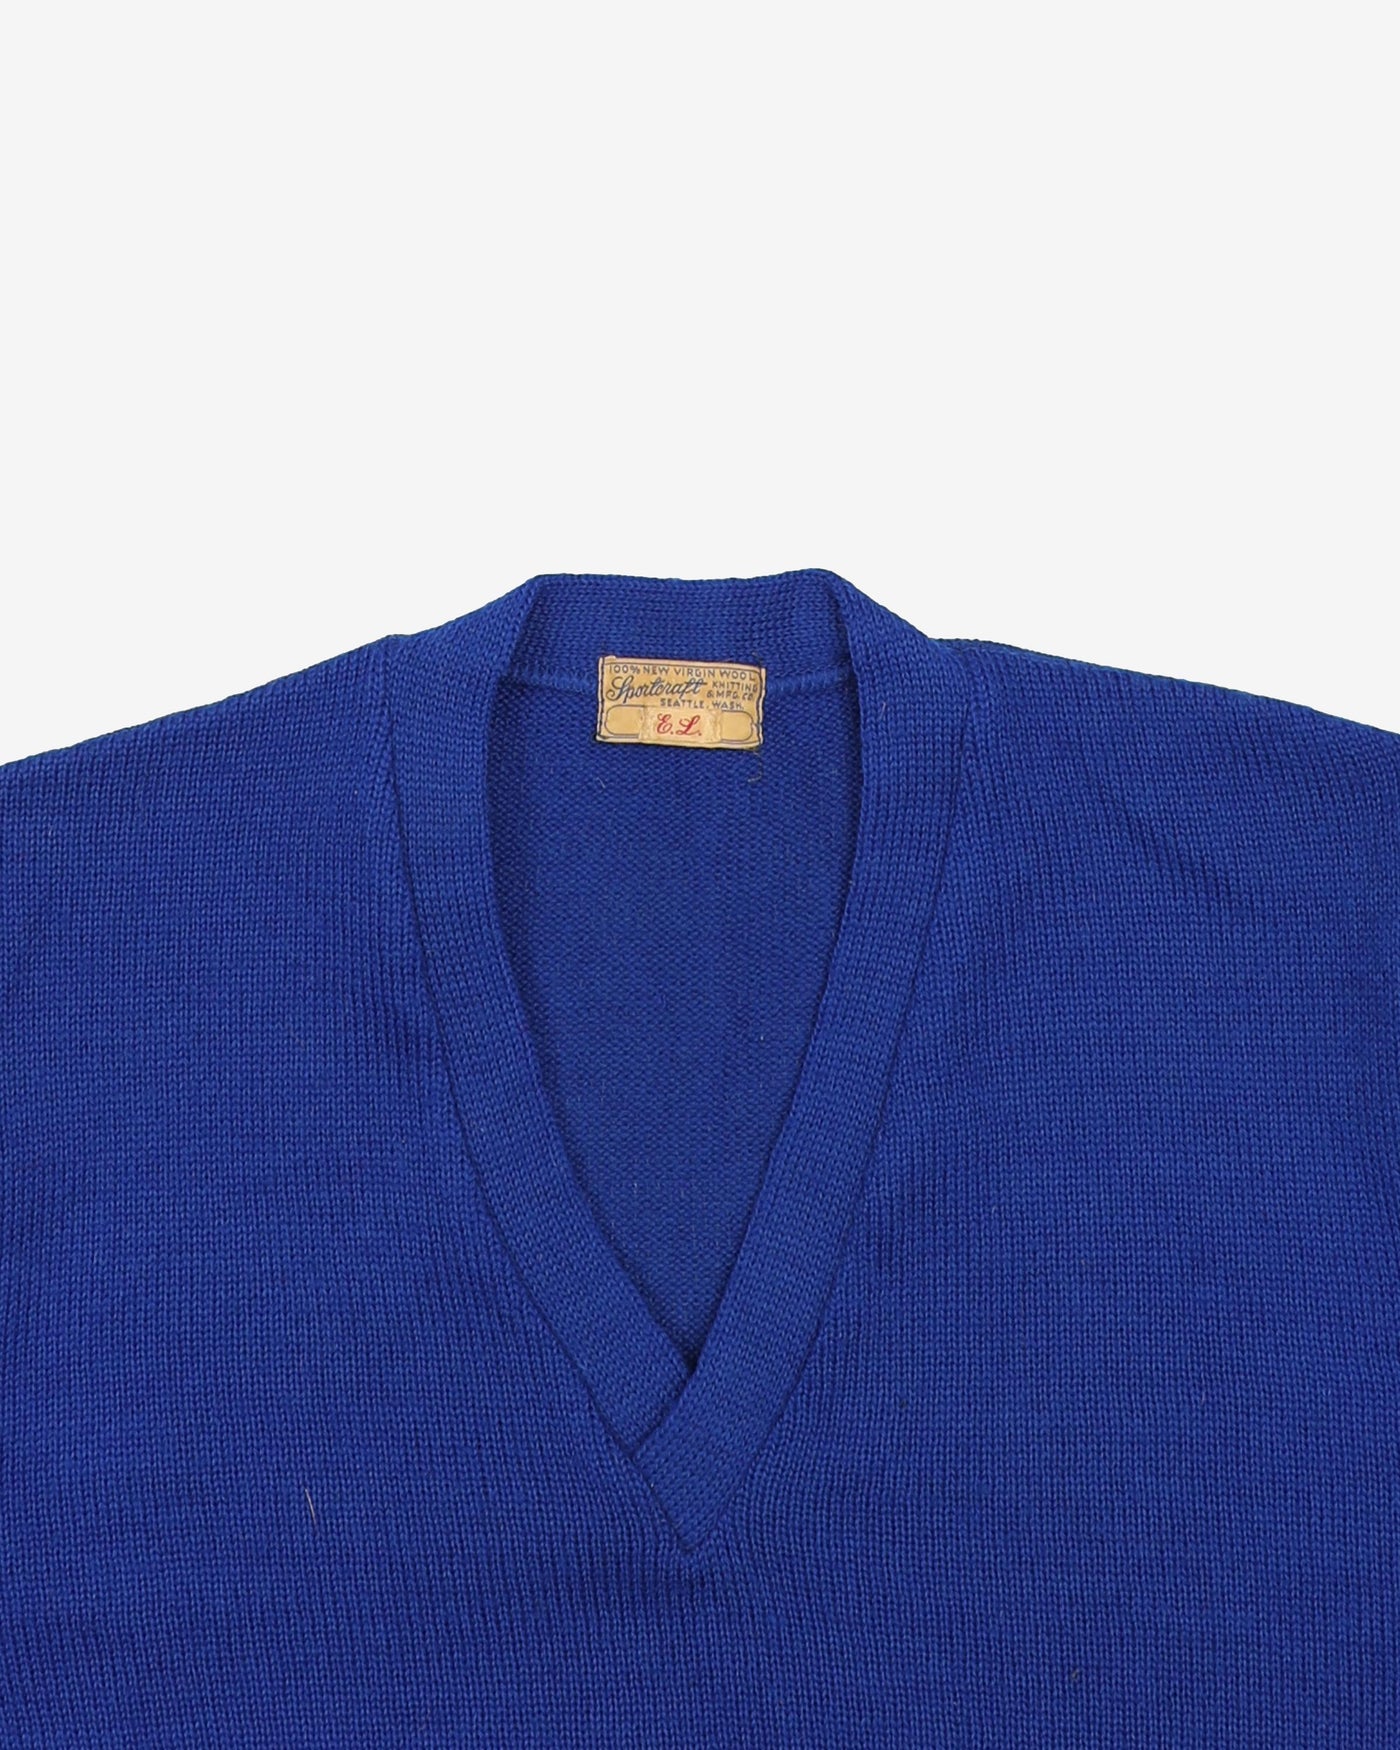 Vintage 50s Royal Blue V-Neck Knit - S